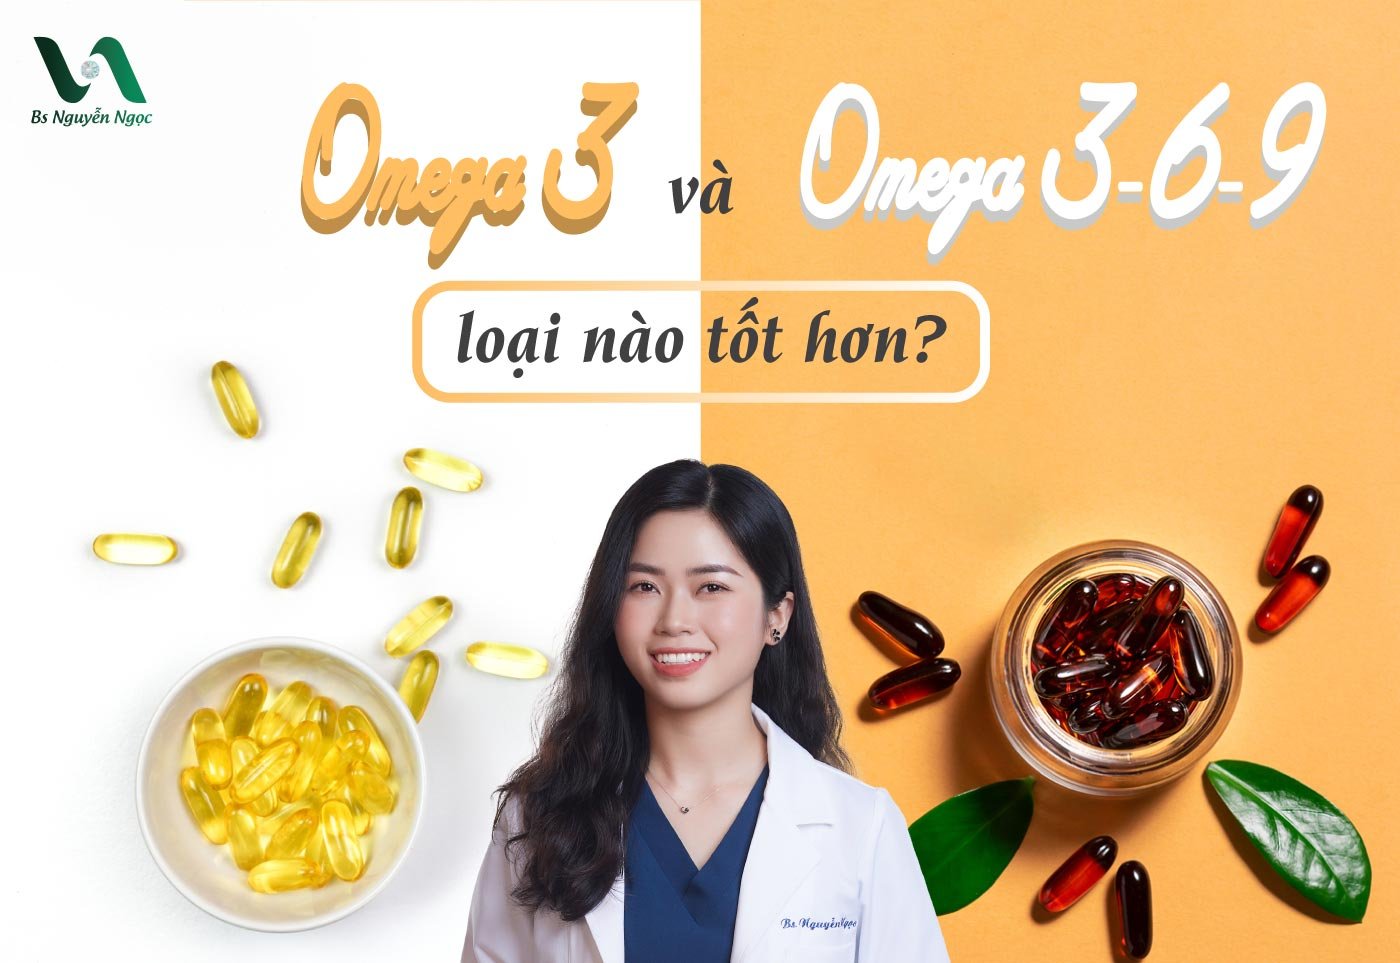 Omega 3 và omega 3-6-9 loại nào tốt hơn?